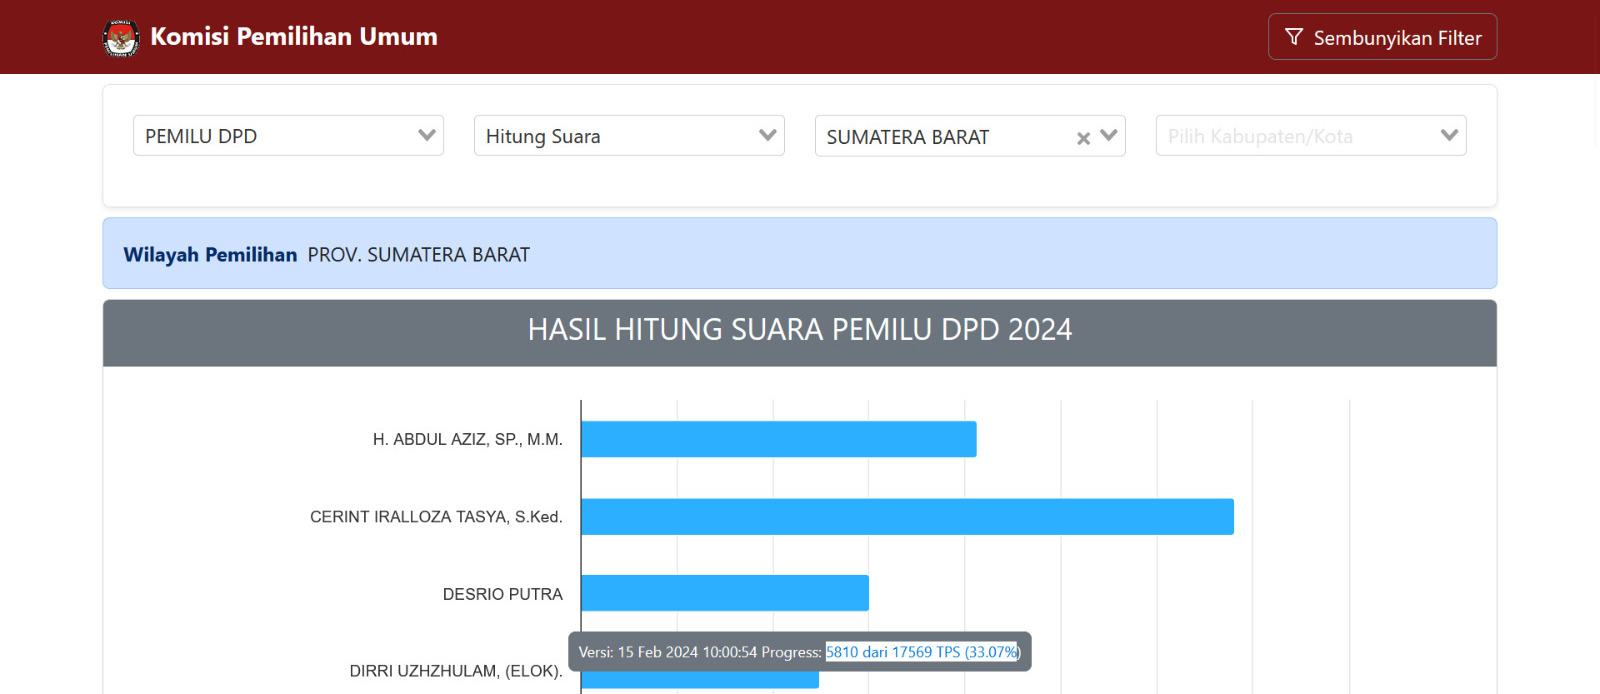 Sengit, Ini Daftar Nama Hasil Hitung Suara Sementara Pemilihan DPD Provinsi Sumatera Barat